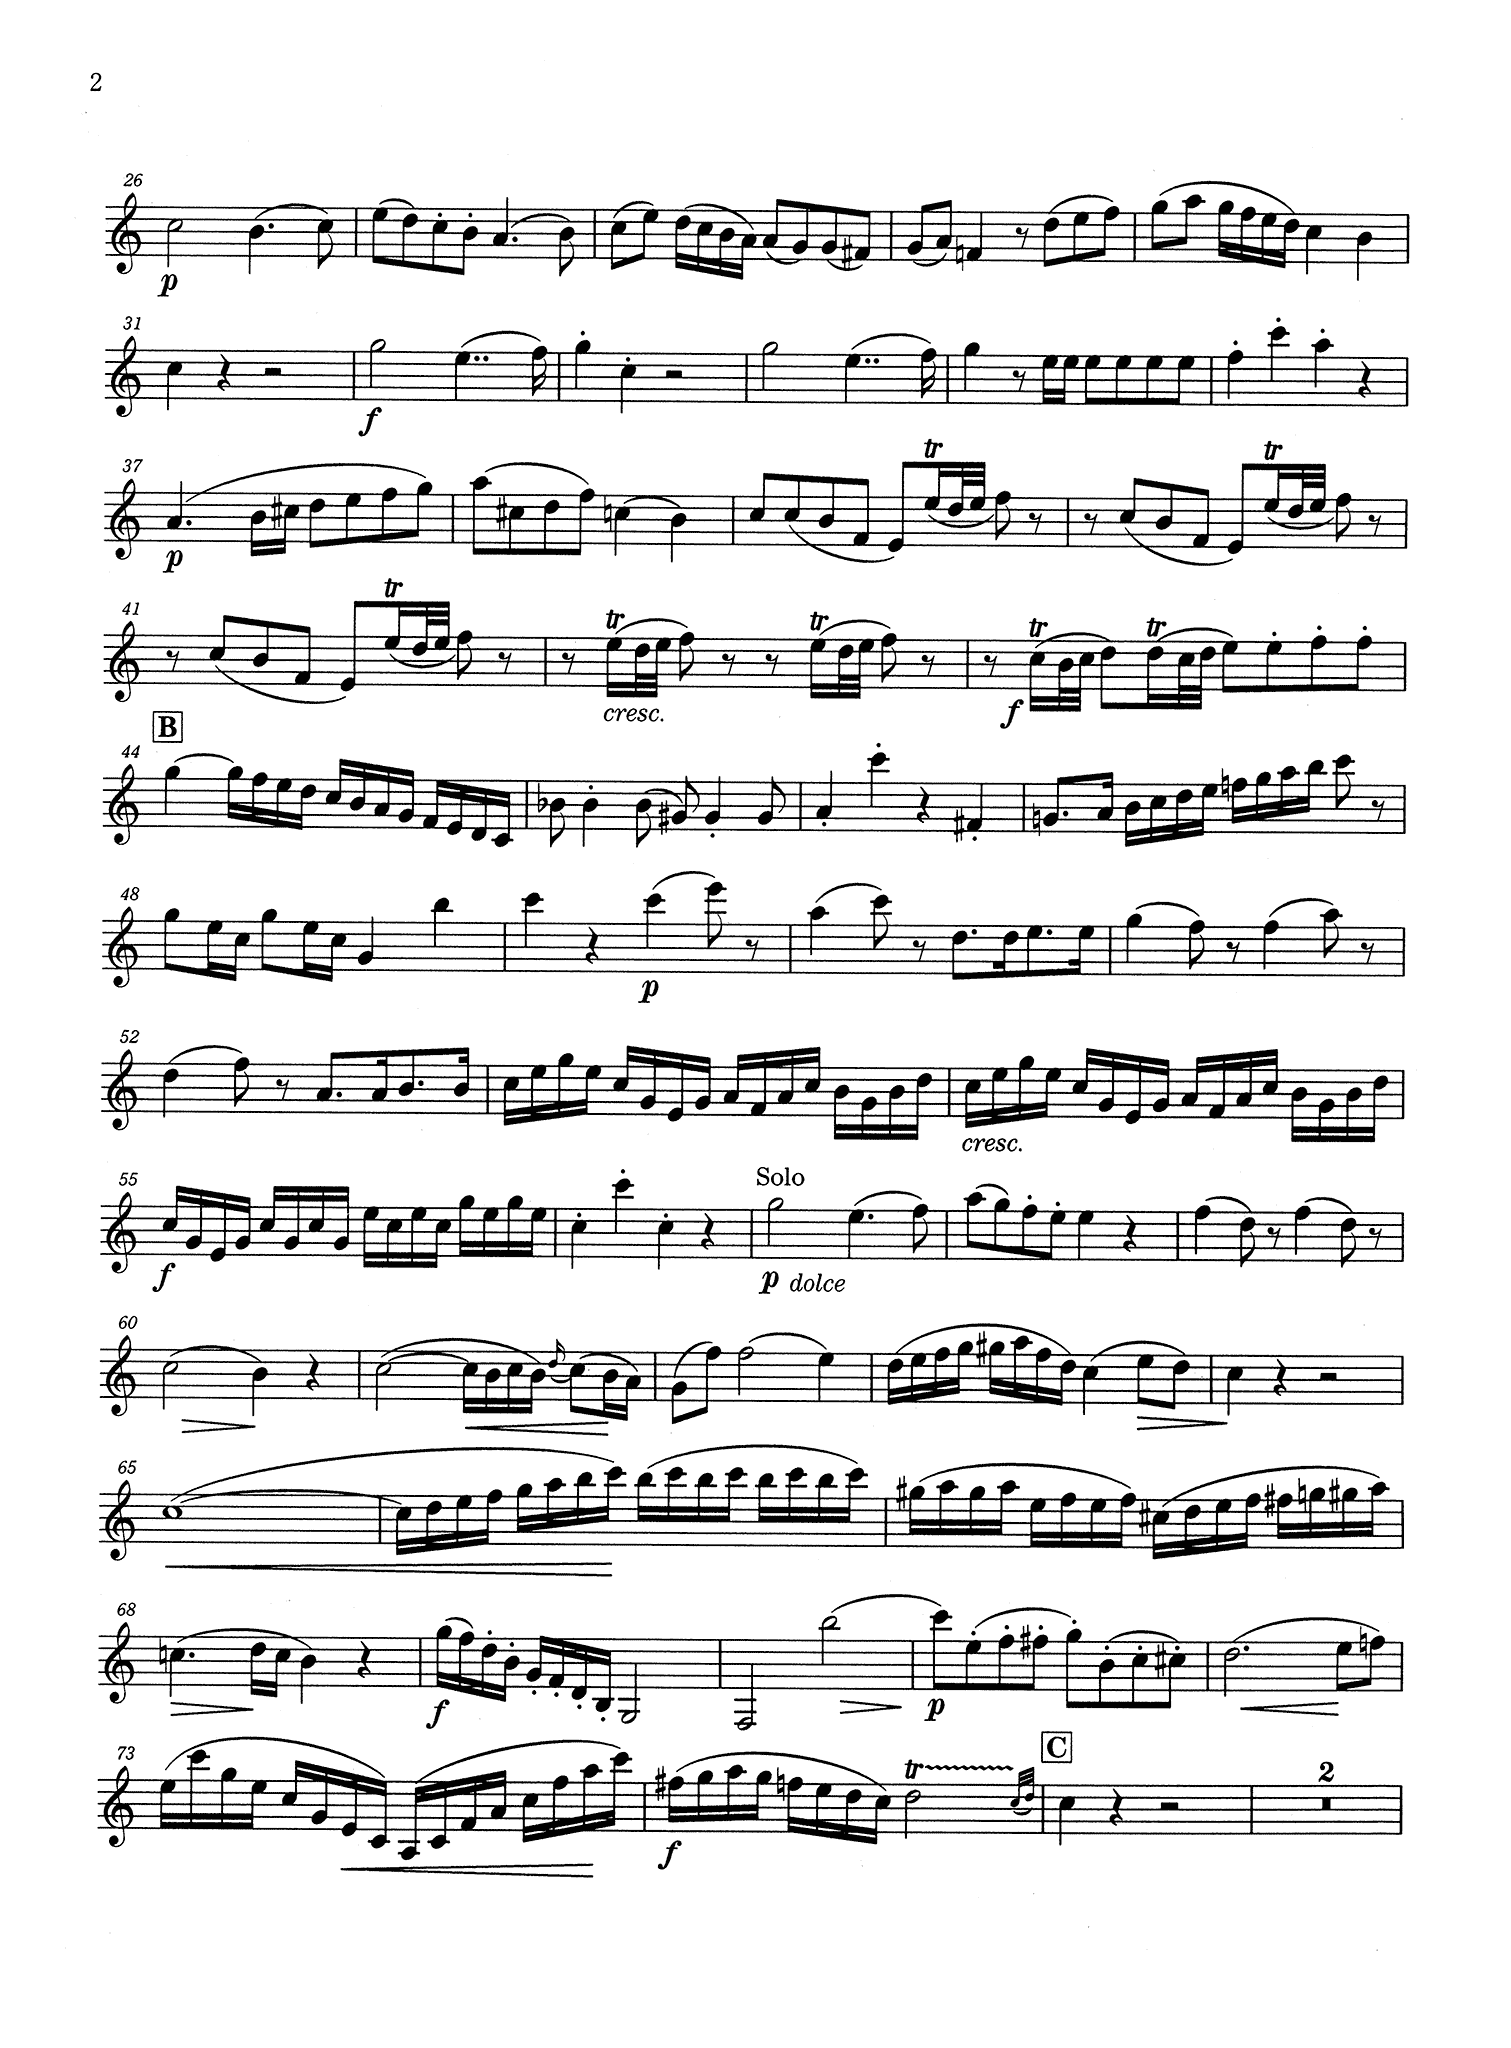 Mozart Concerto K. 622 A Clarinet solo part